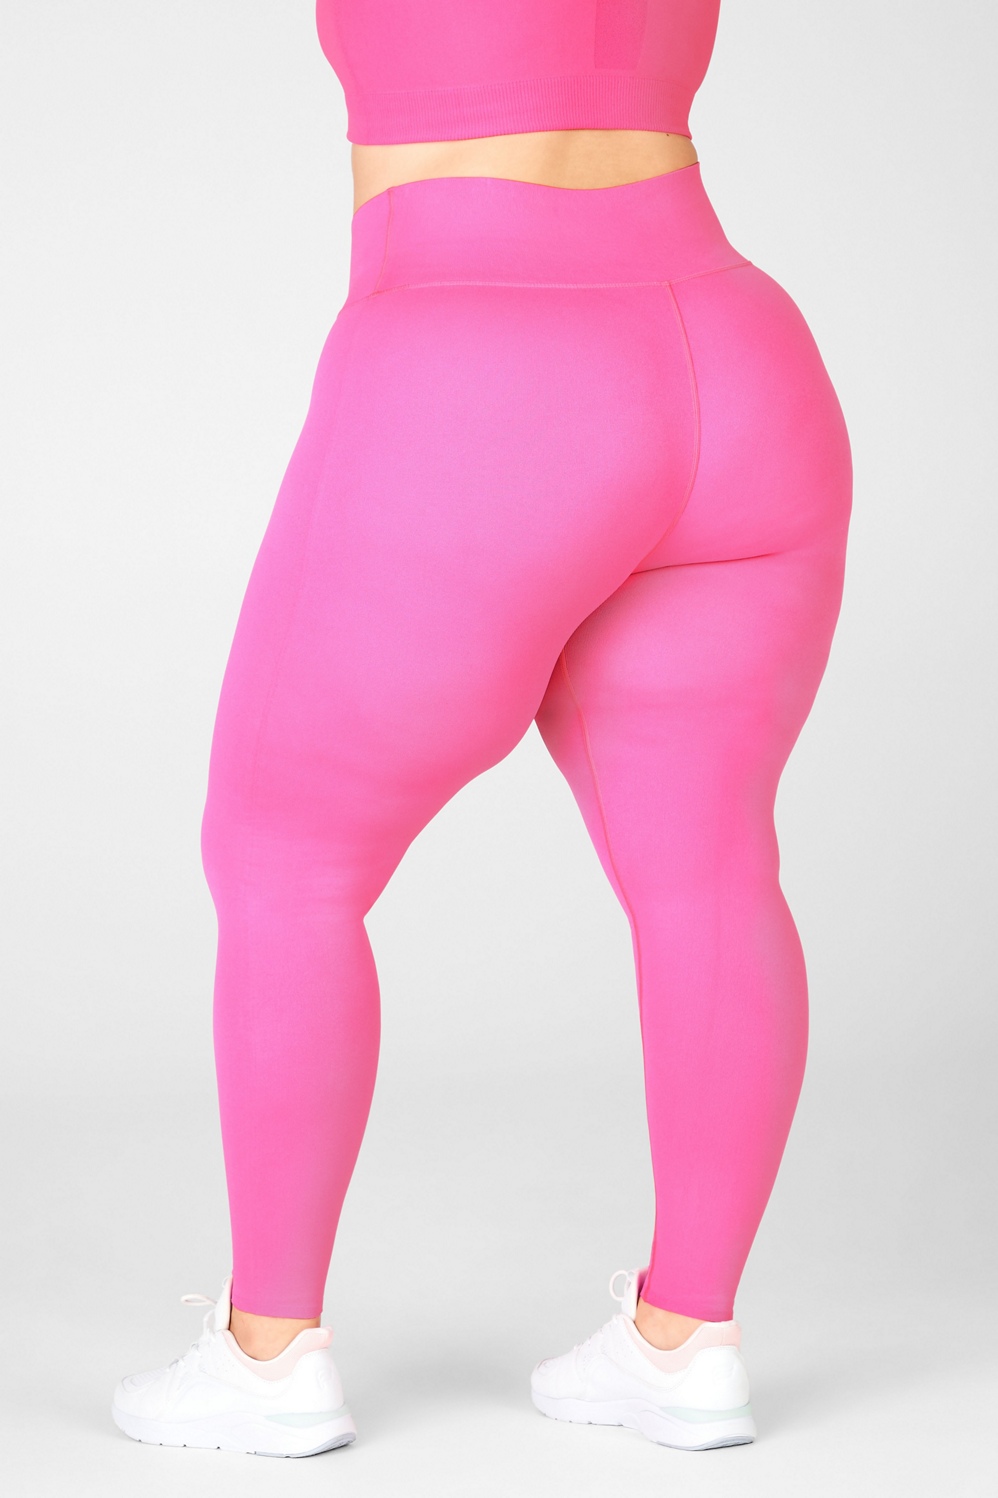 Ultimate Bonded Legging - PINK - Victoria's Secret  Fitness leggings  women, Vs pink leggings, Leggings fashion